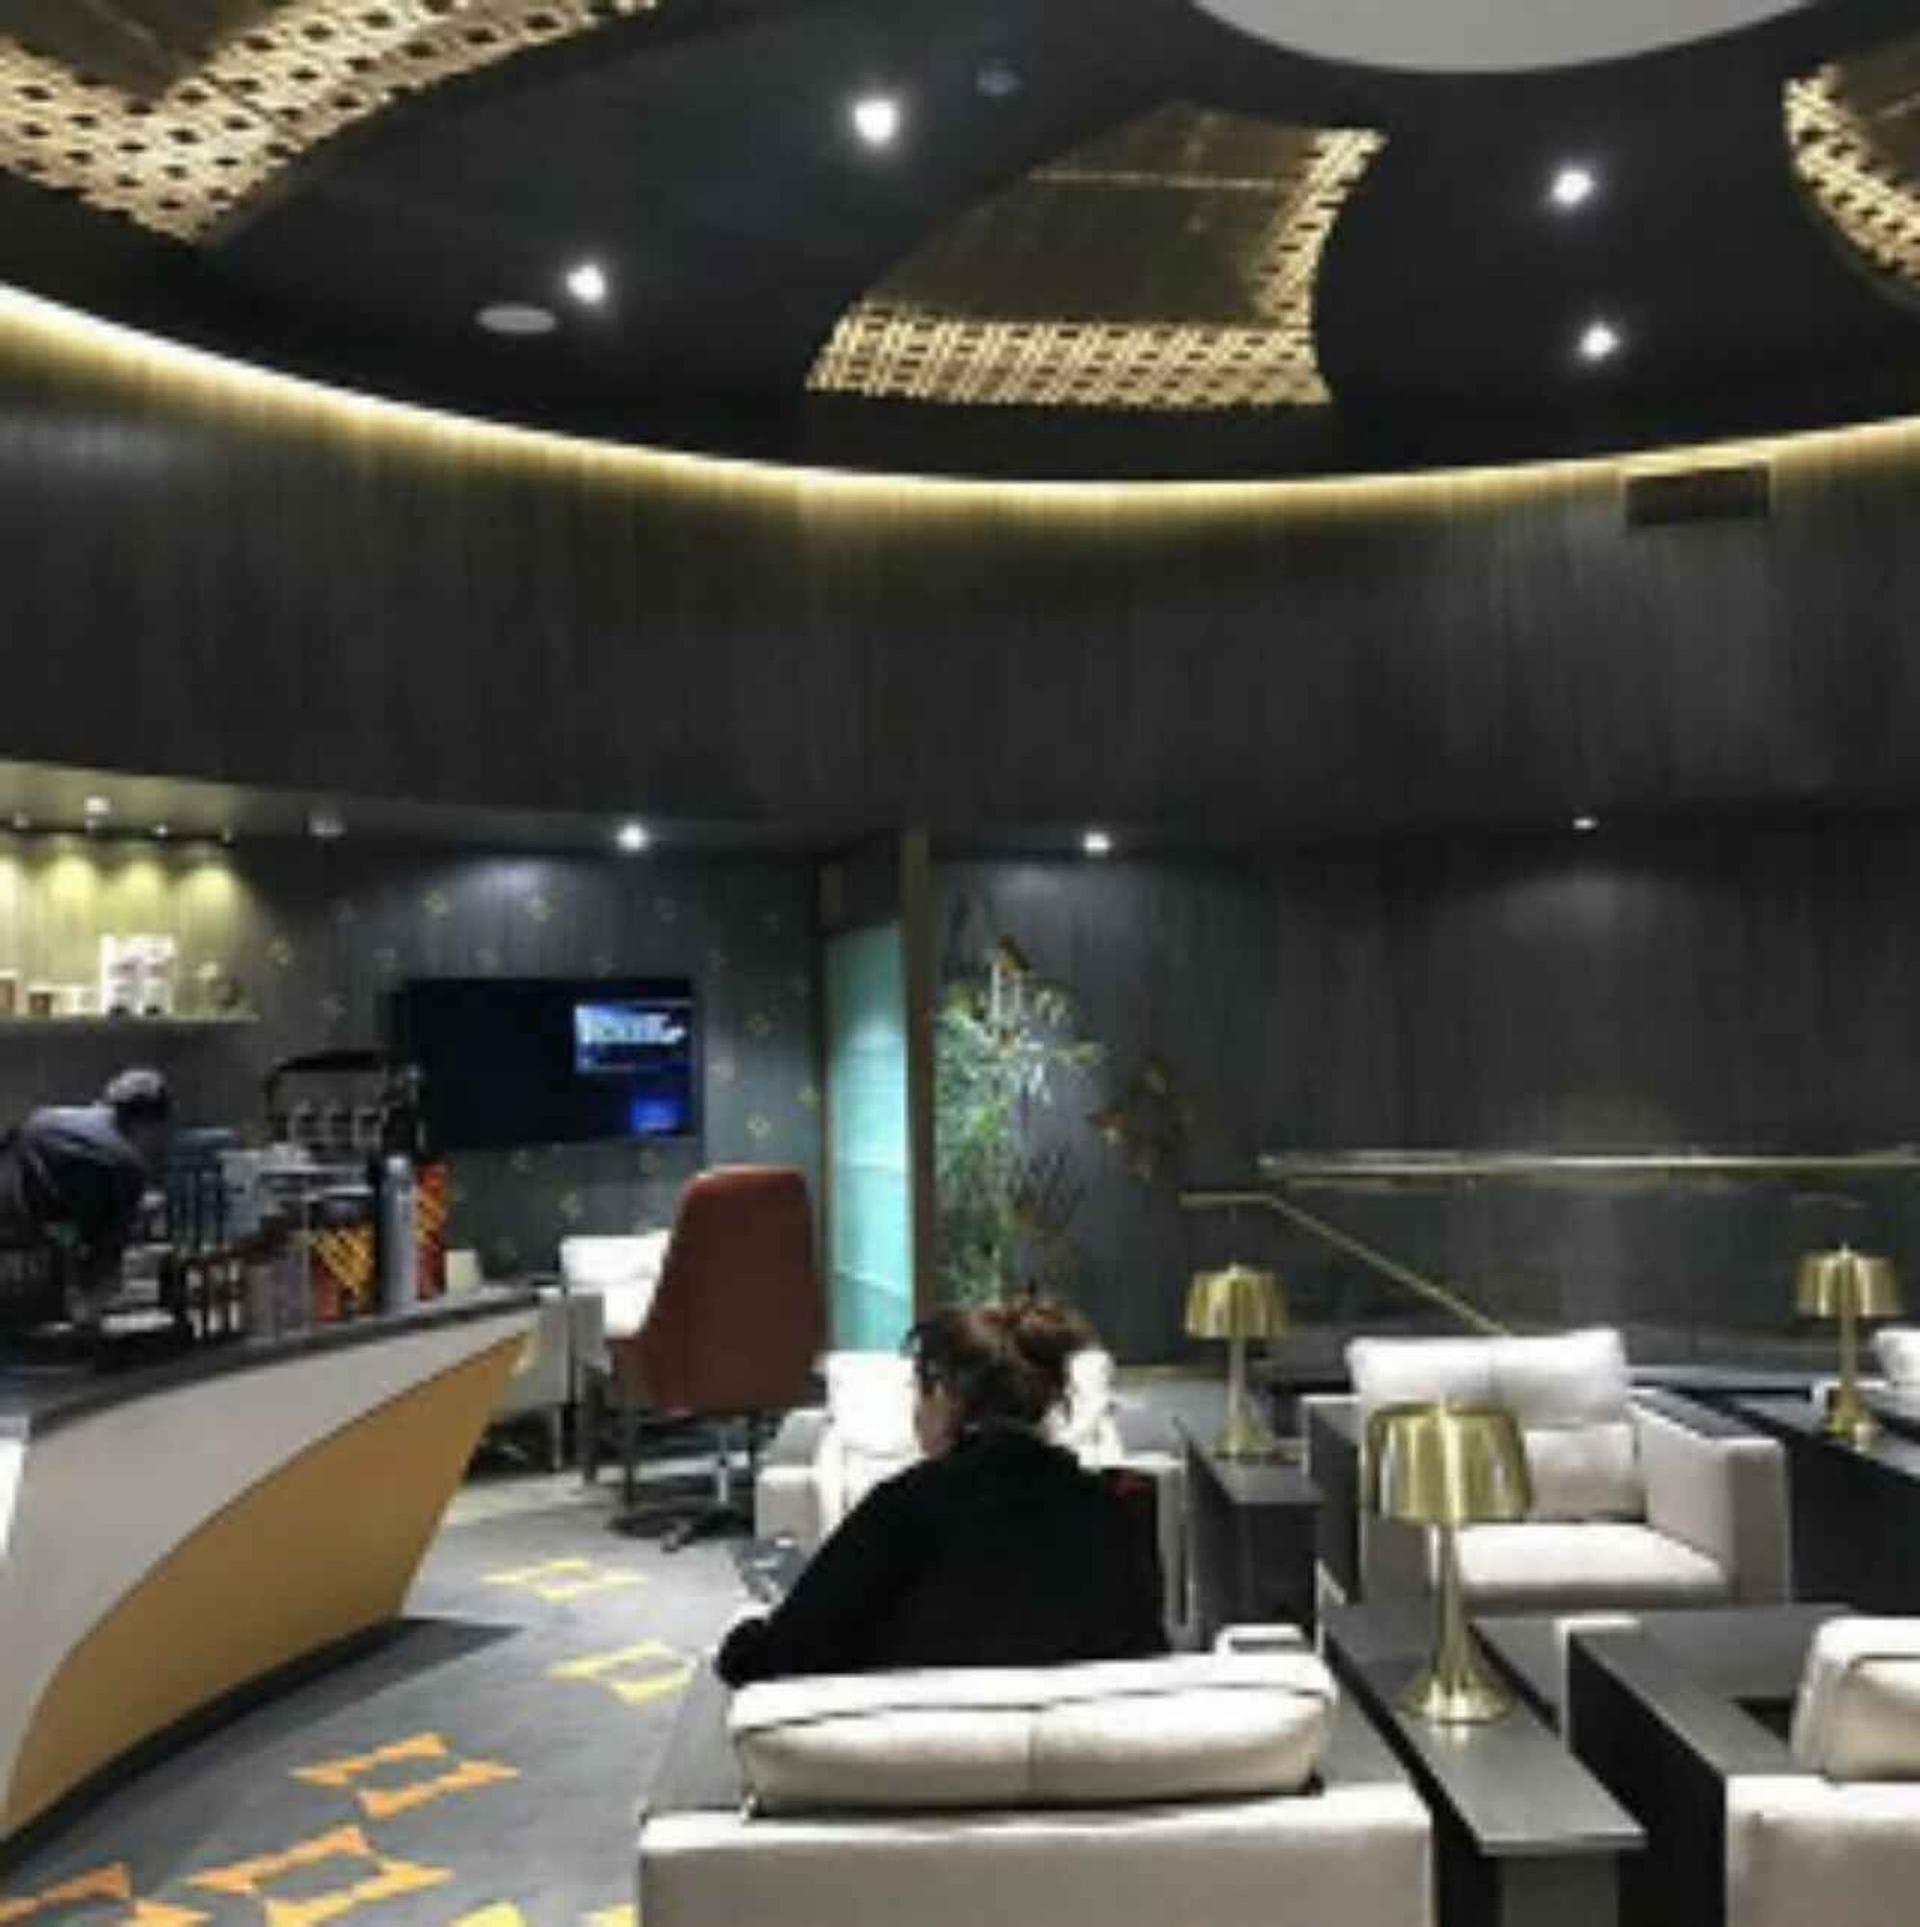 Bank Alfalah Premier Lounge (Domestic) image 4 of 5